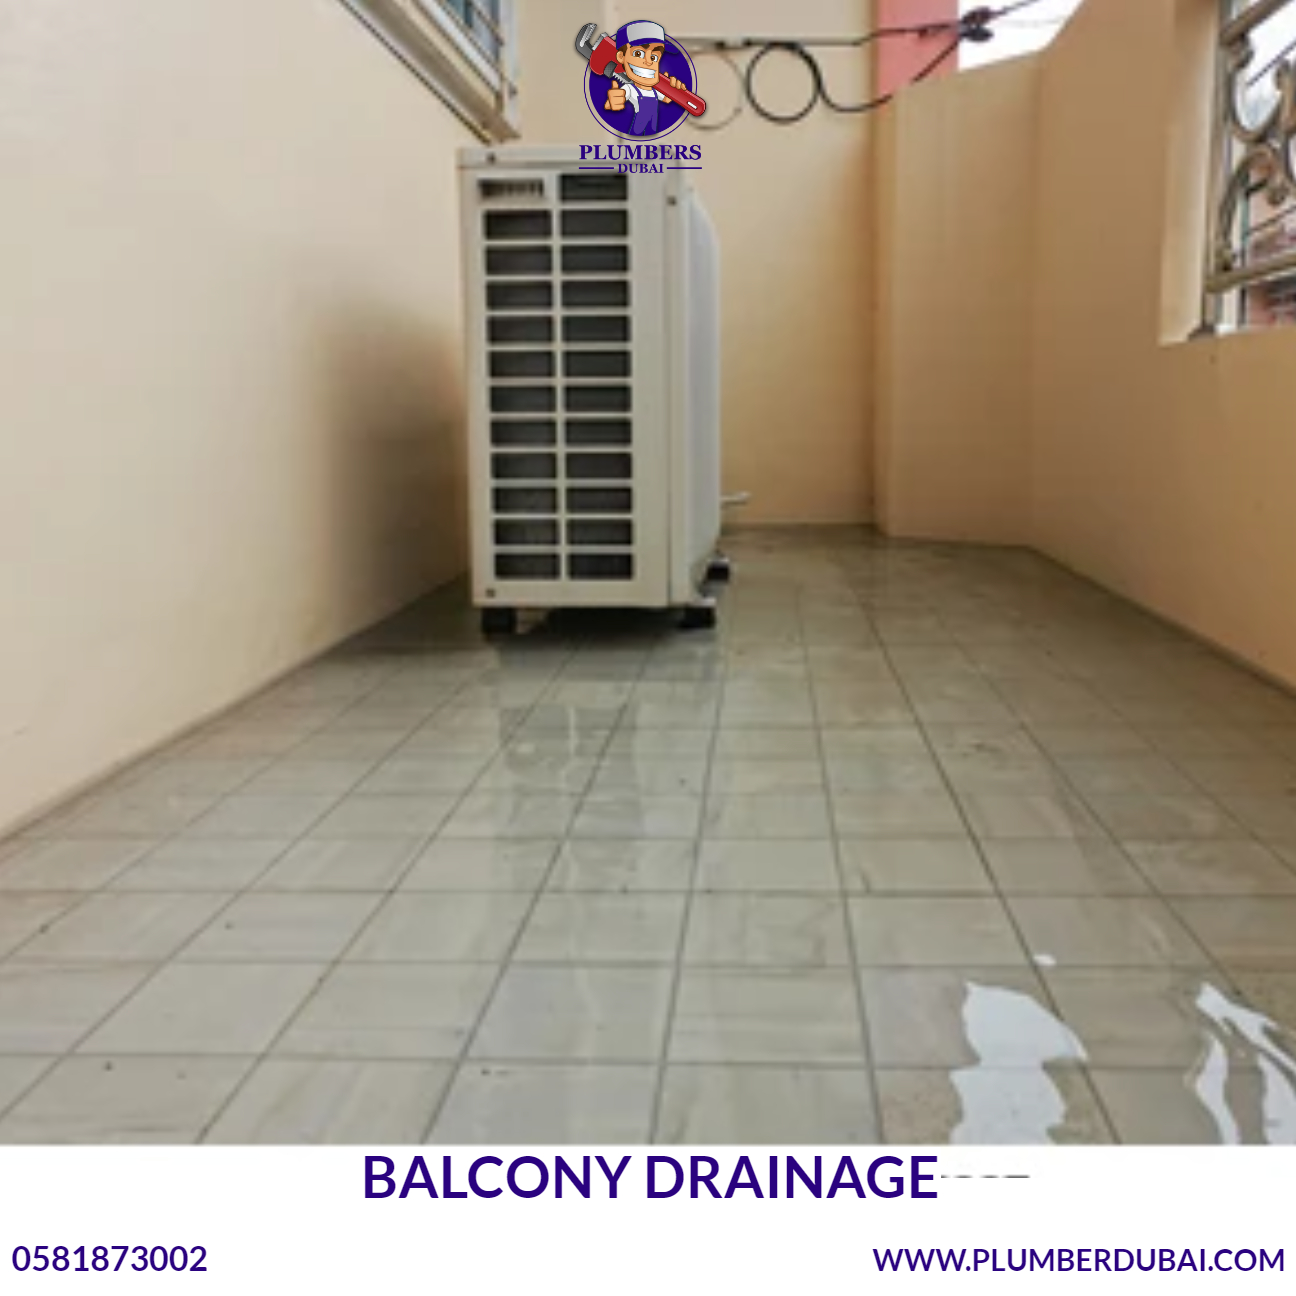 Balcony drainage